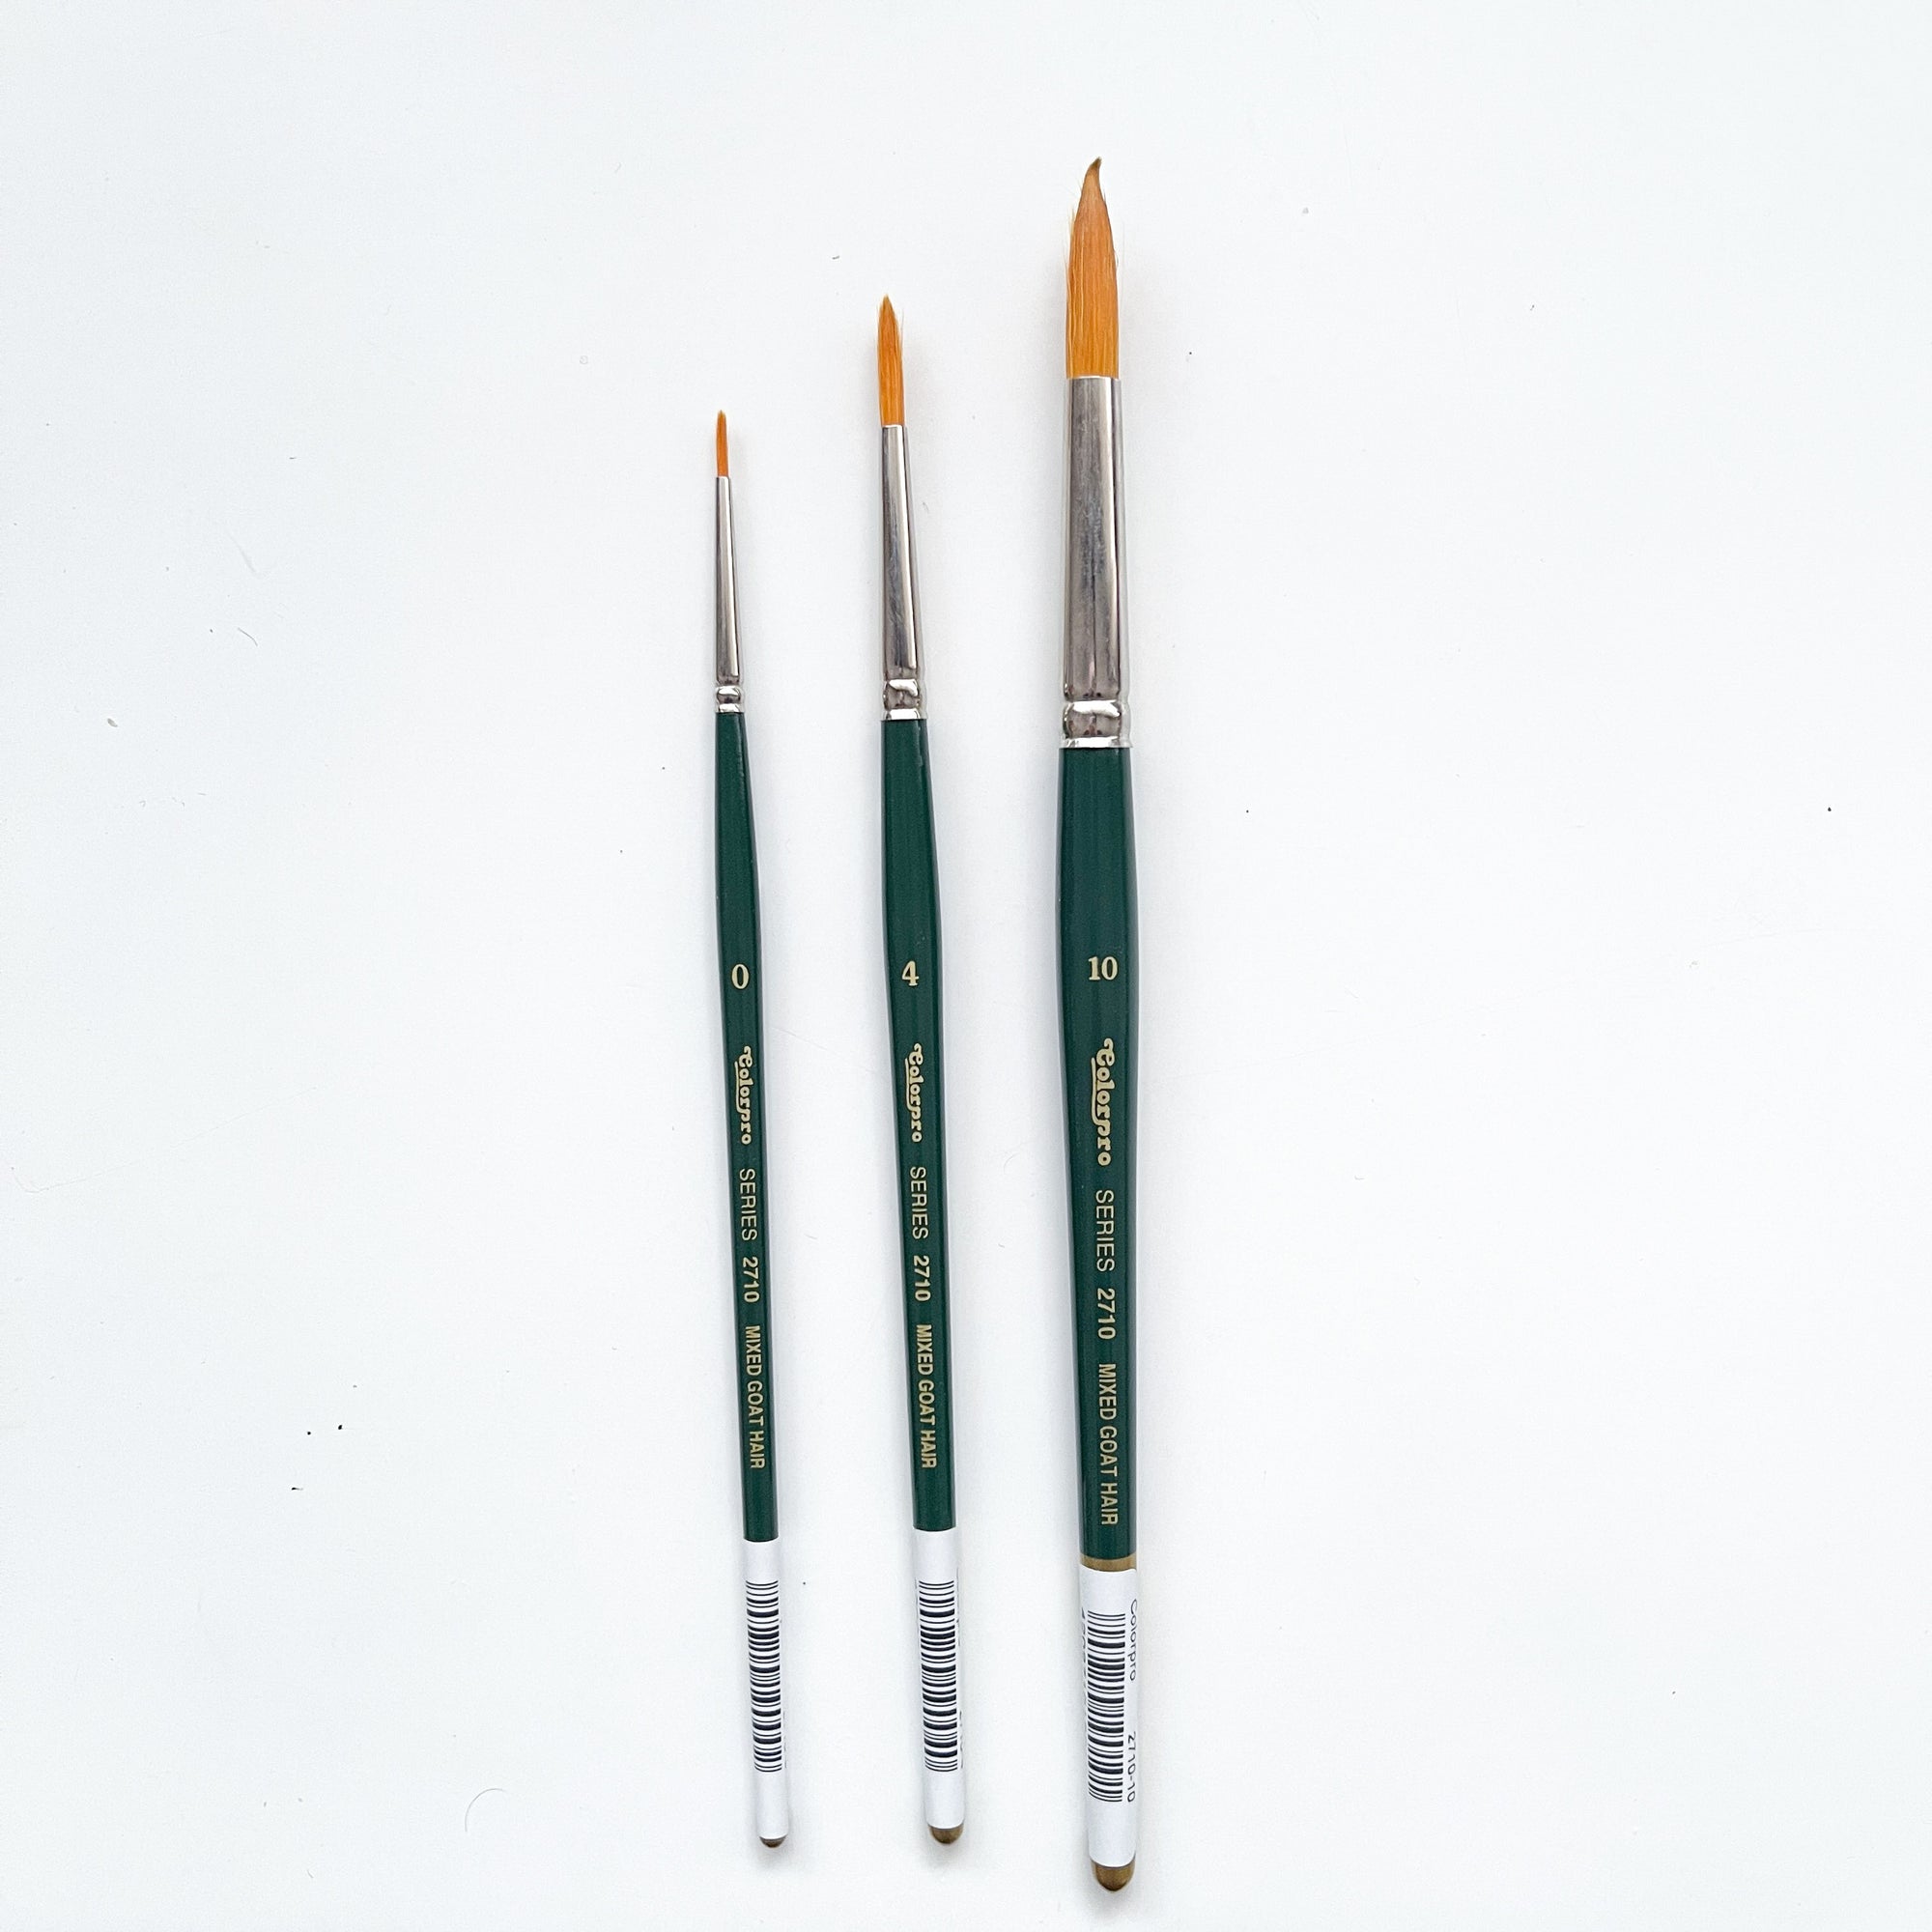 Colorpro Round Brushes - Size 0, 4, 10